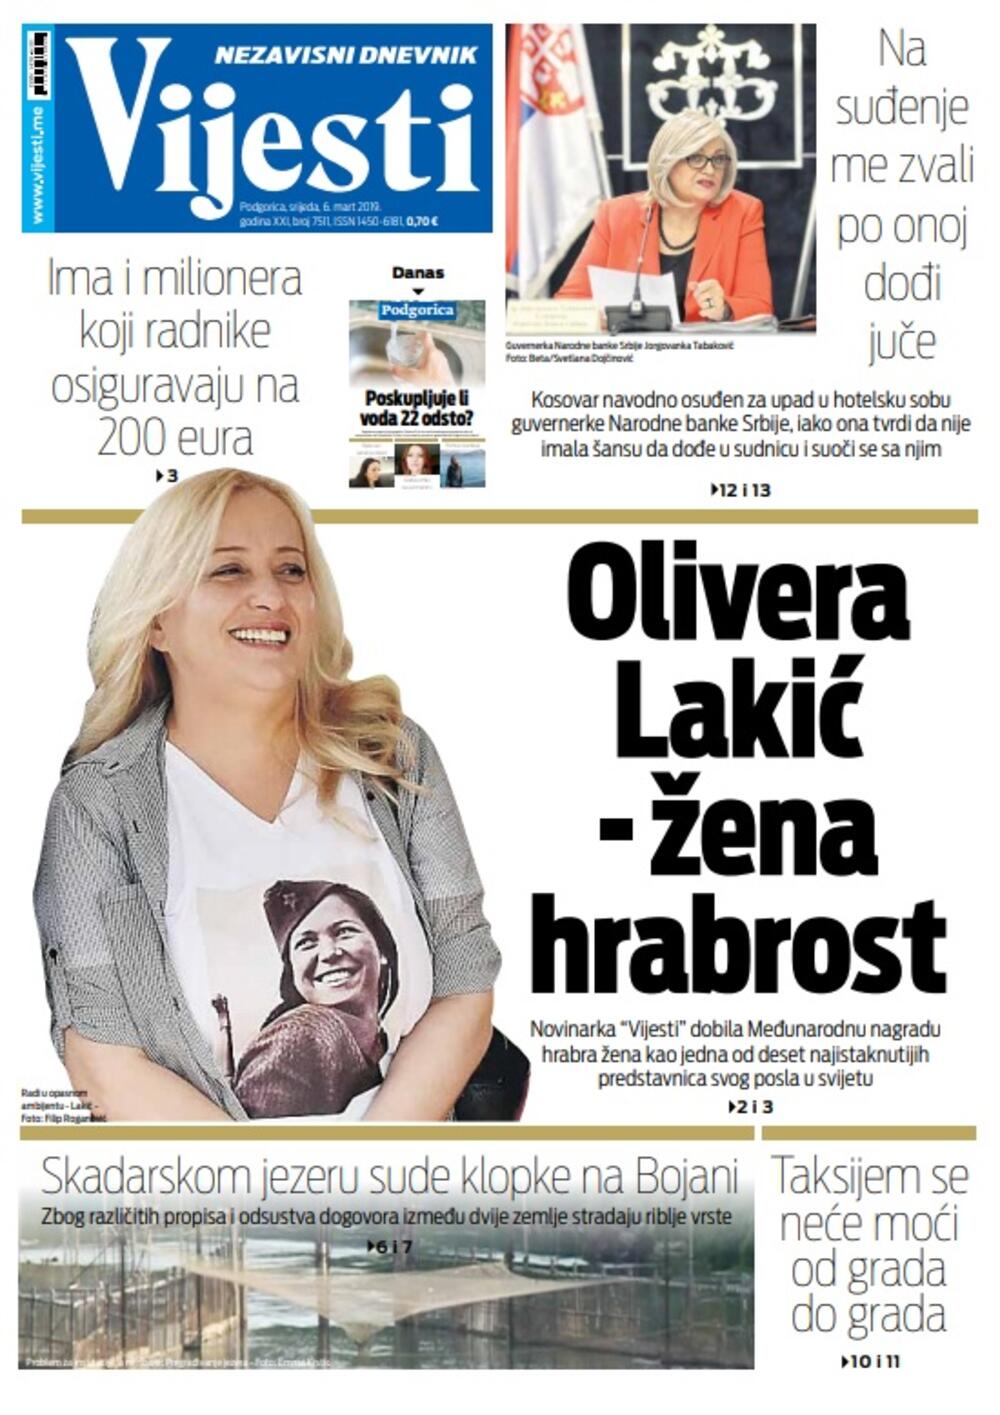 Naslovna strana 6.3.2019., Foto: Vijesti